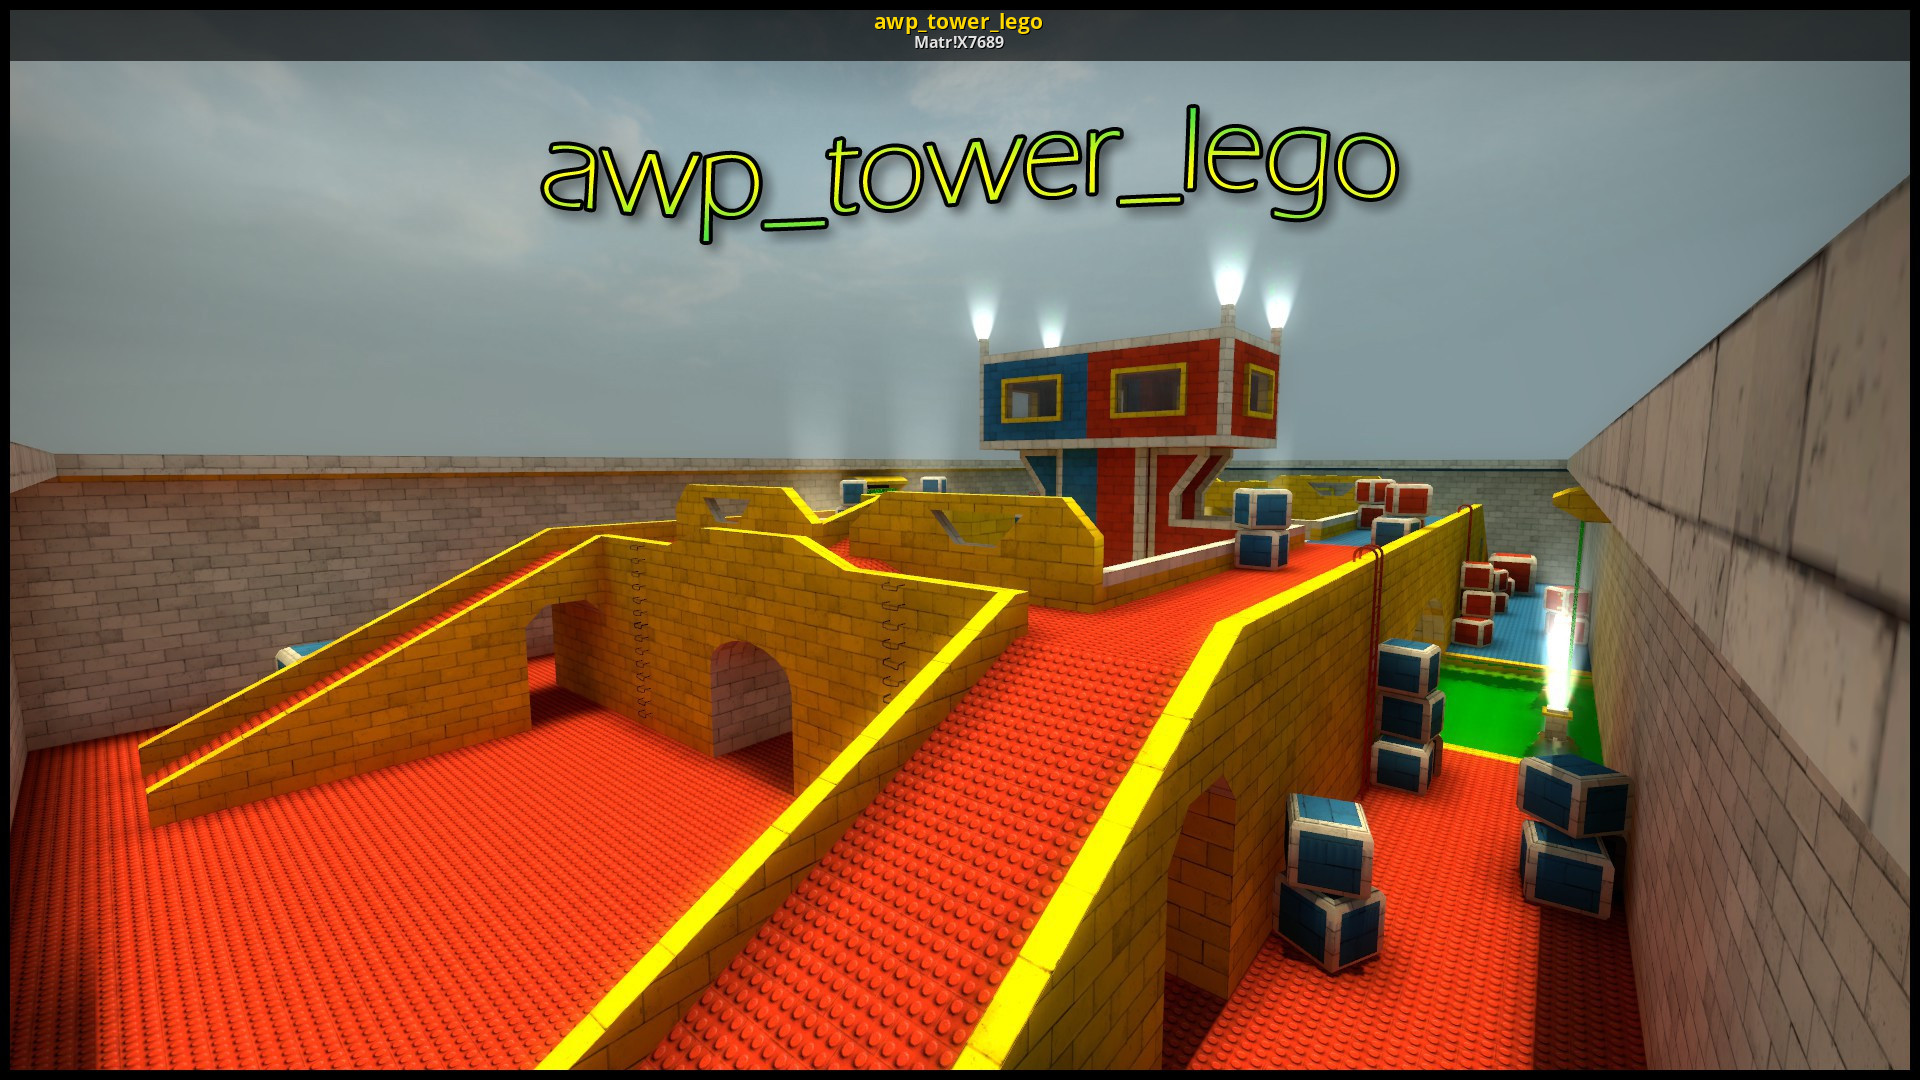 сервера с картой awp lego 2 кс го фото 89